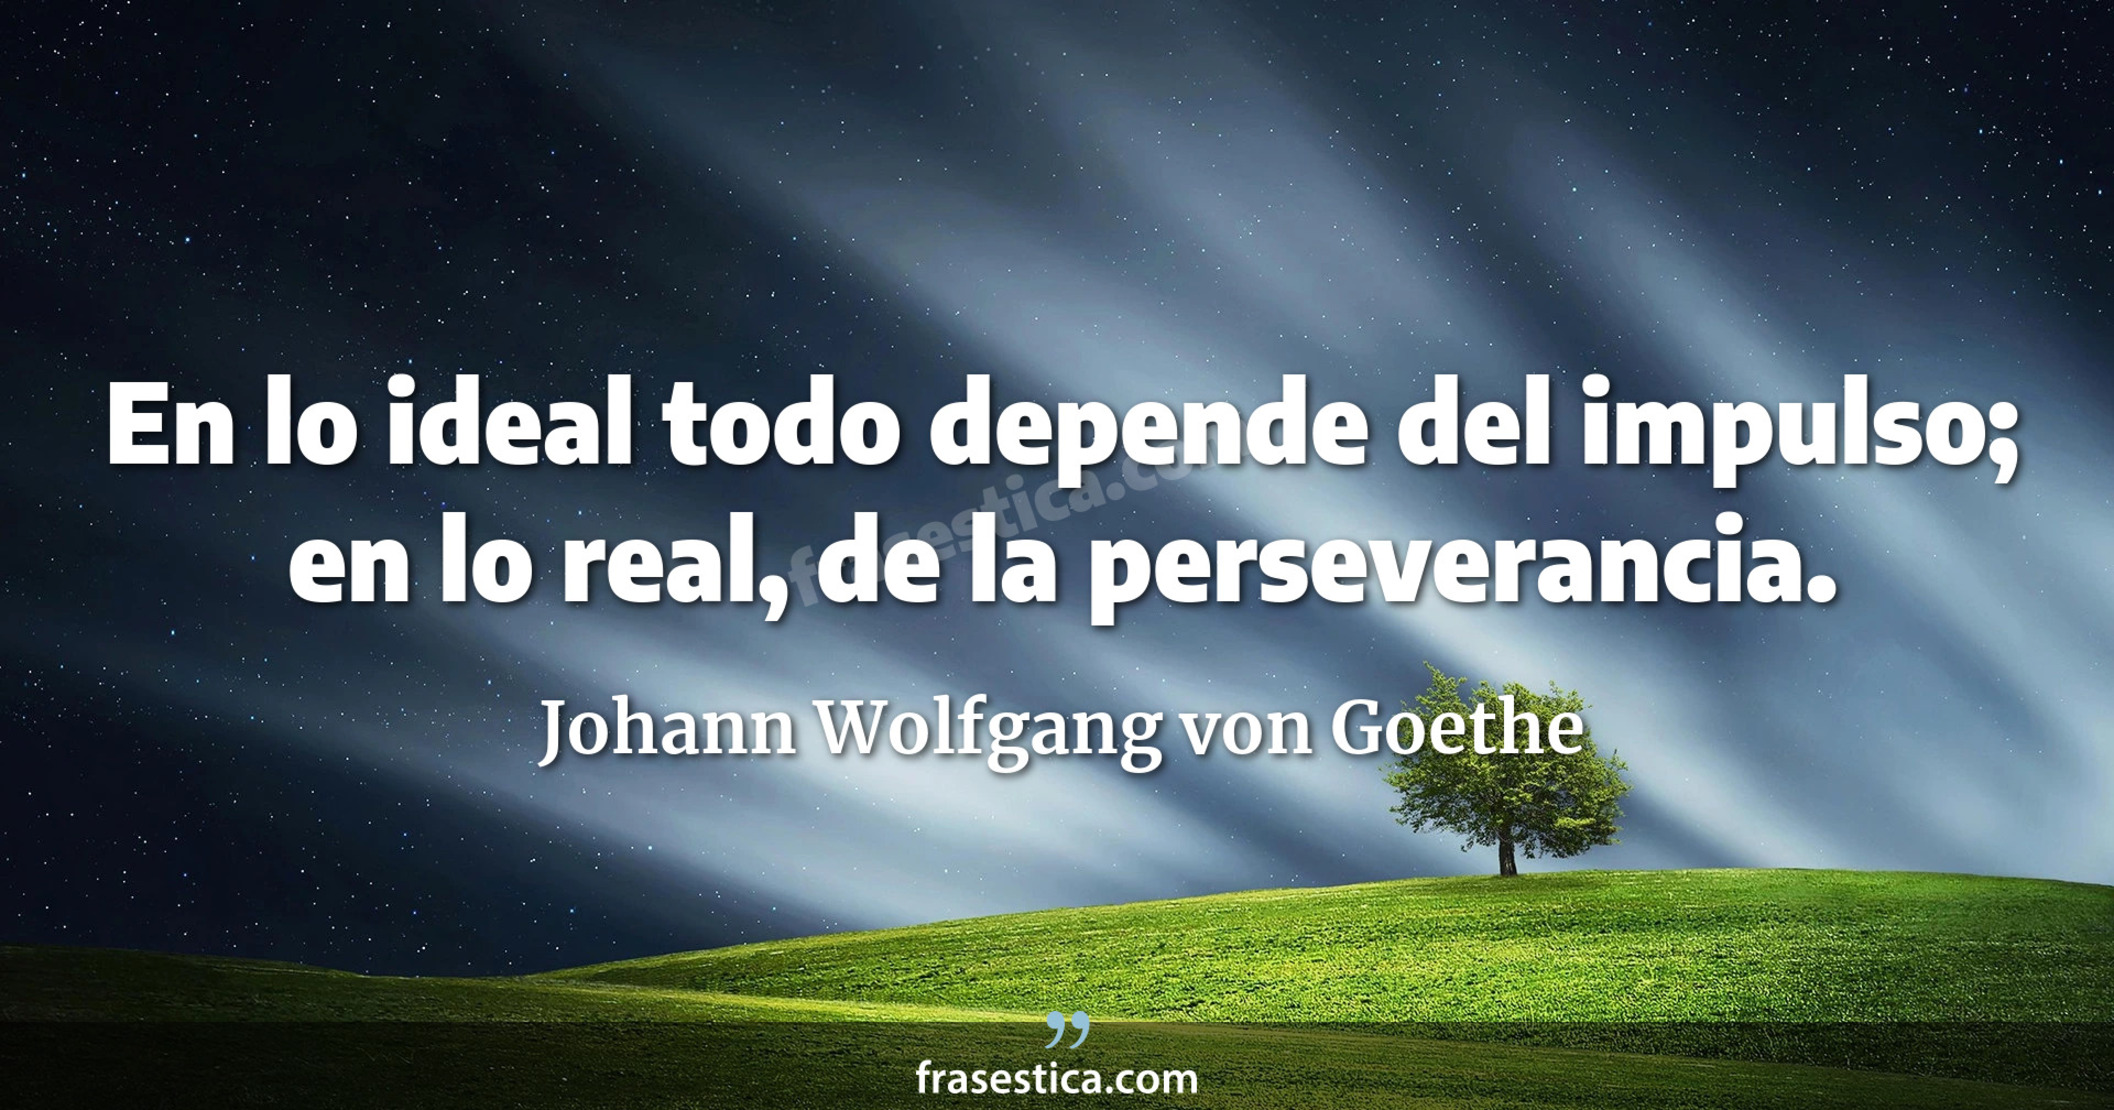 En lo ideal todo depende del impulso; en lo real, de la perseverancia. - Johann Wolfgang von Goethe